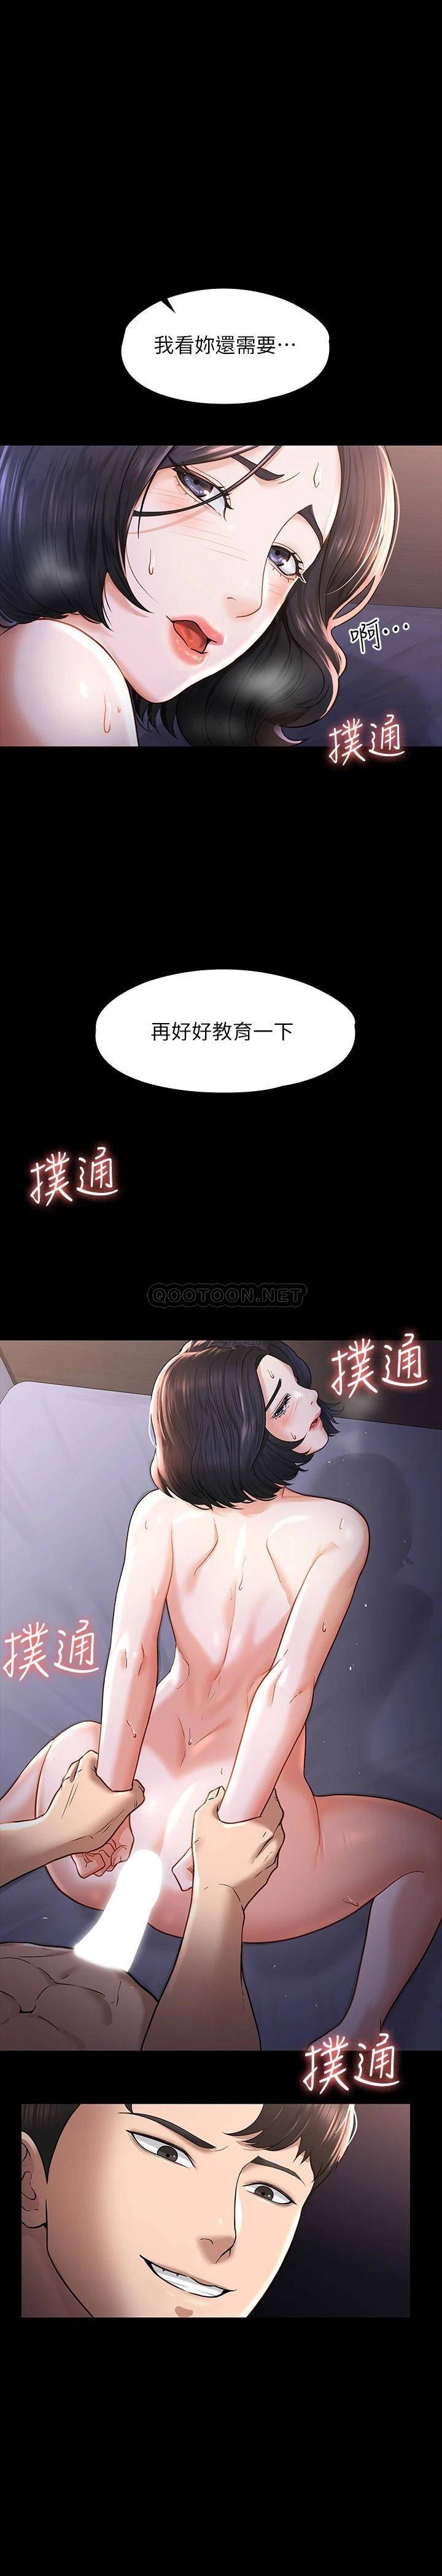 韩国污漫画 超級公務員 第29话 在床上爱液大喷发 1